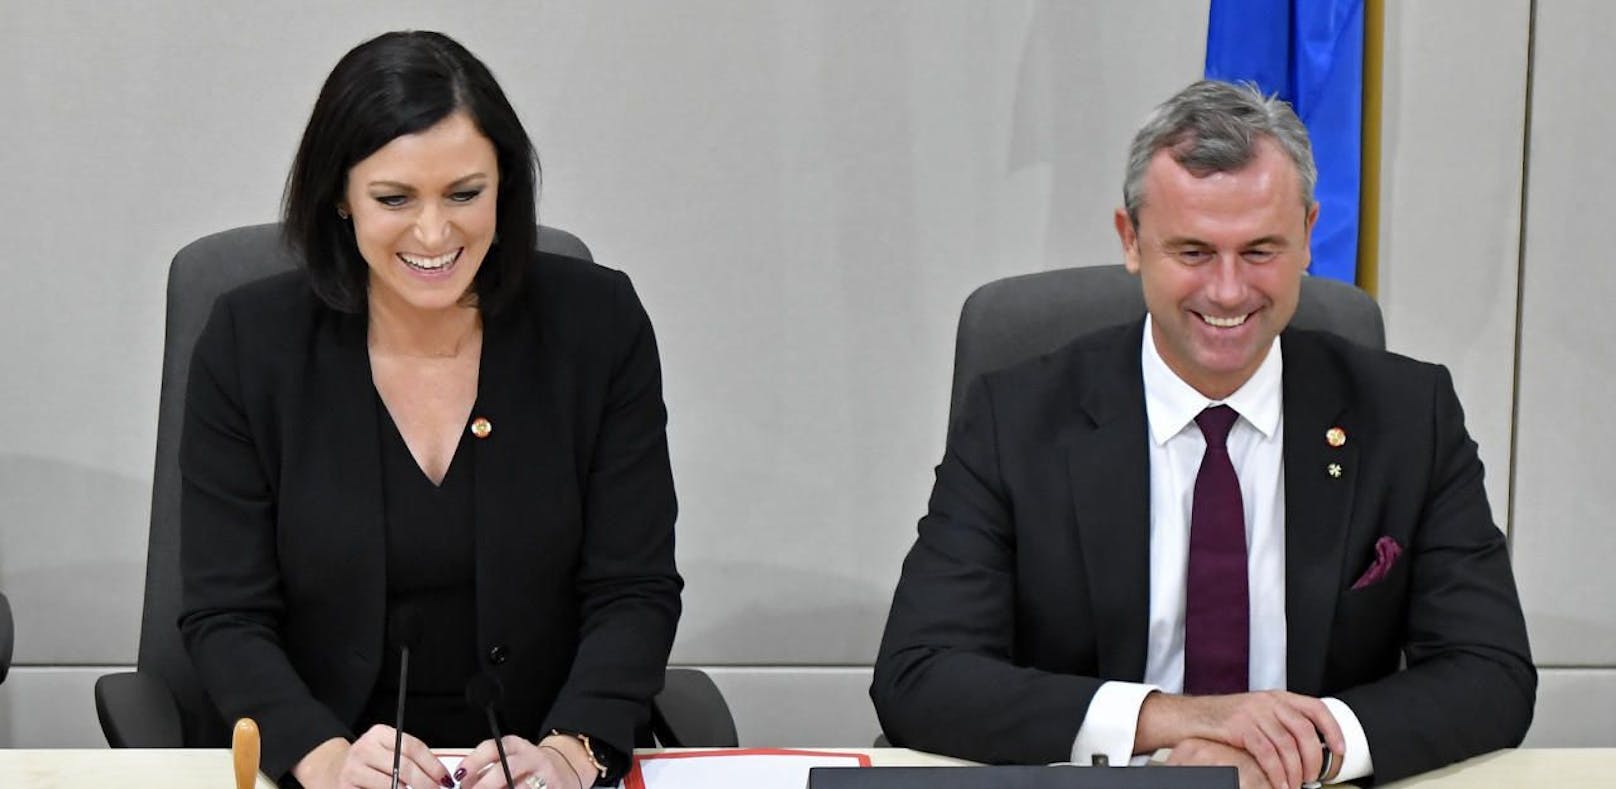 Elisabeth Köstinger (ÖVP) und Norbert Hofer (FPÖ) legen die Papiere am Dienstag auf den Tisch.